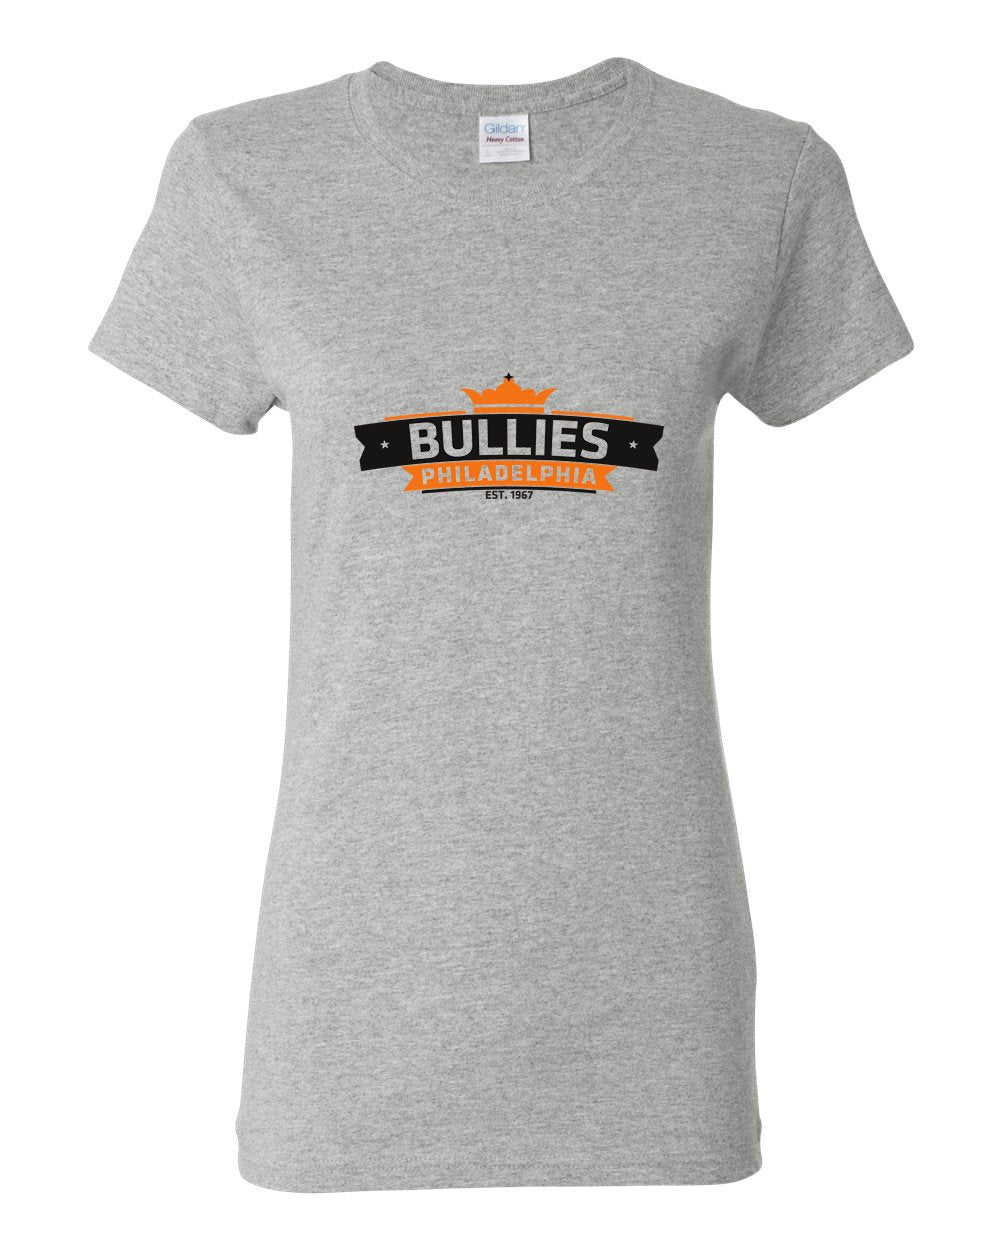 Bullies King LADIES Missy-Fit T-Shirt